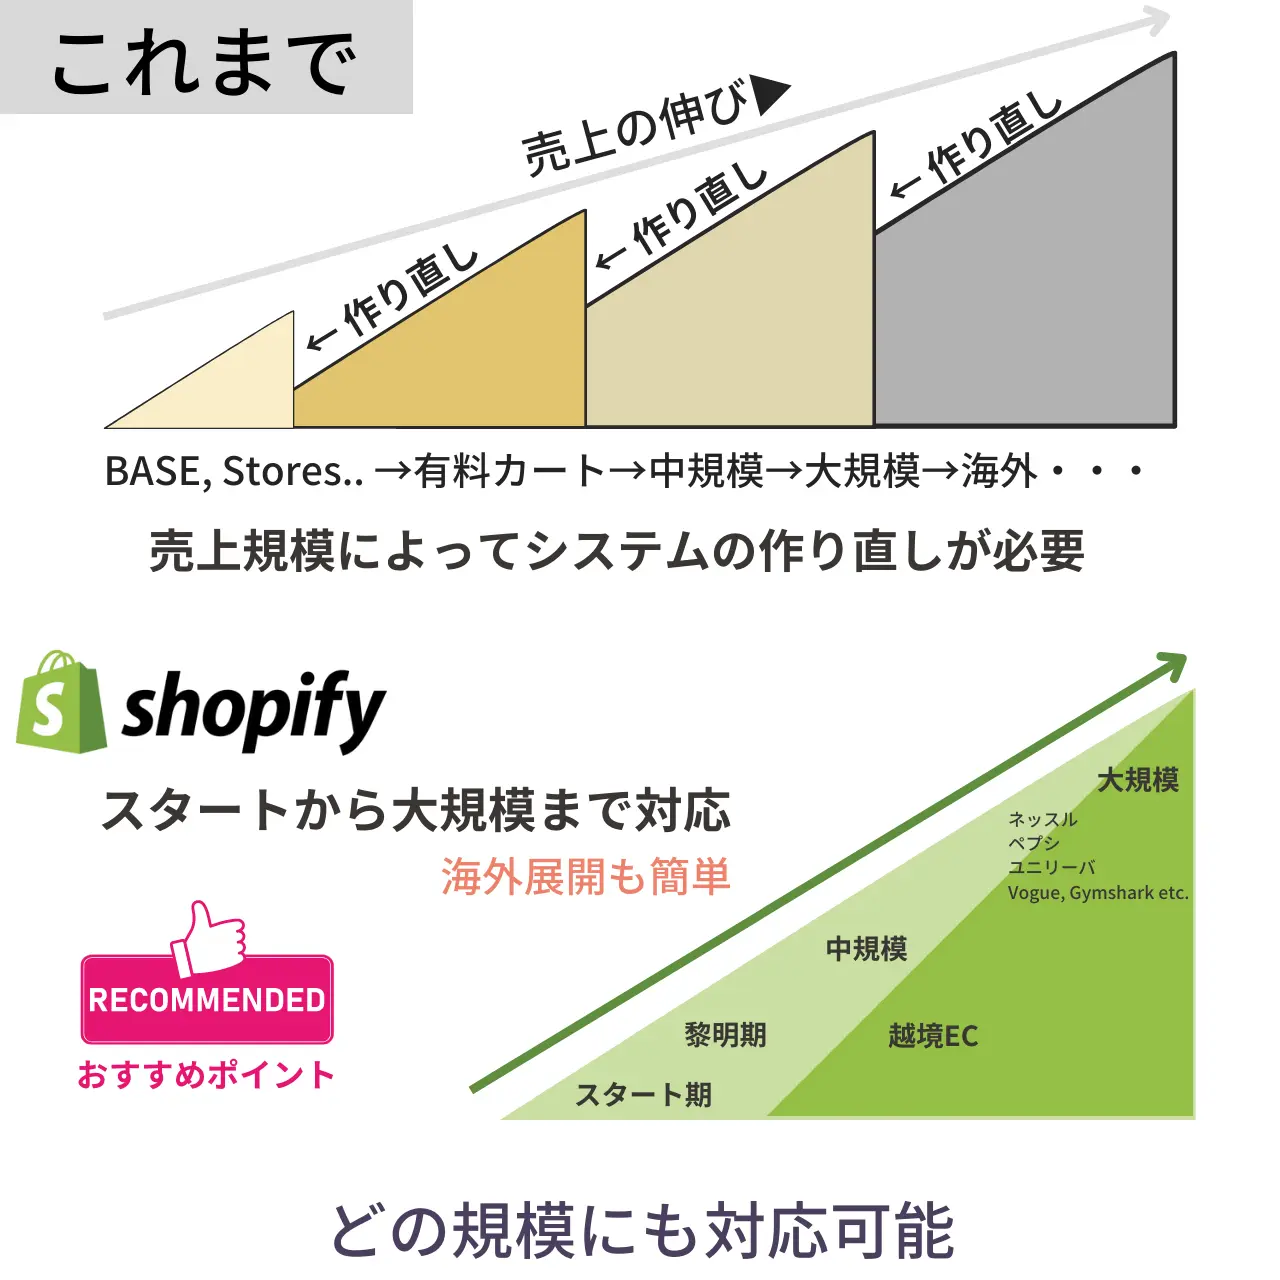 shopifyは、小規模から大規模までのECに対応できるという説明図